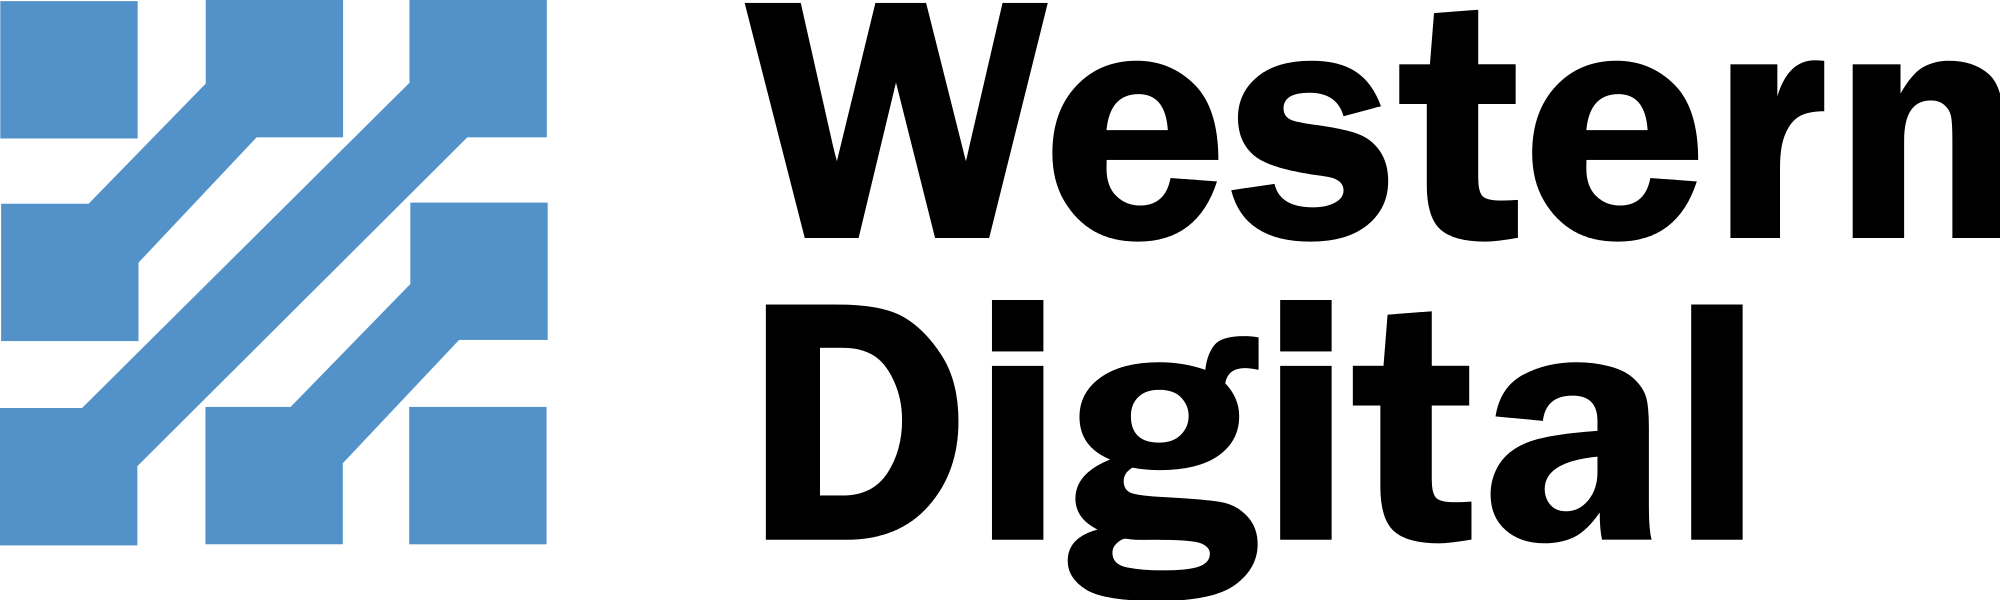 Open - Western Digital Co Ltd Logo (2000x600), Png Download